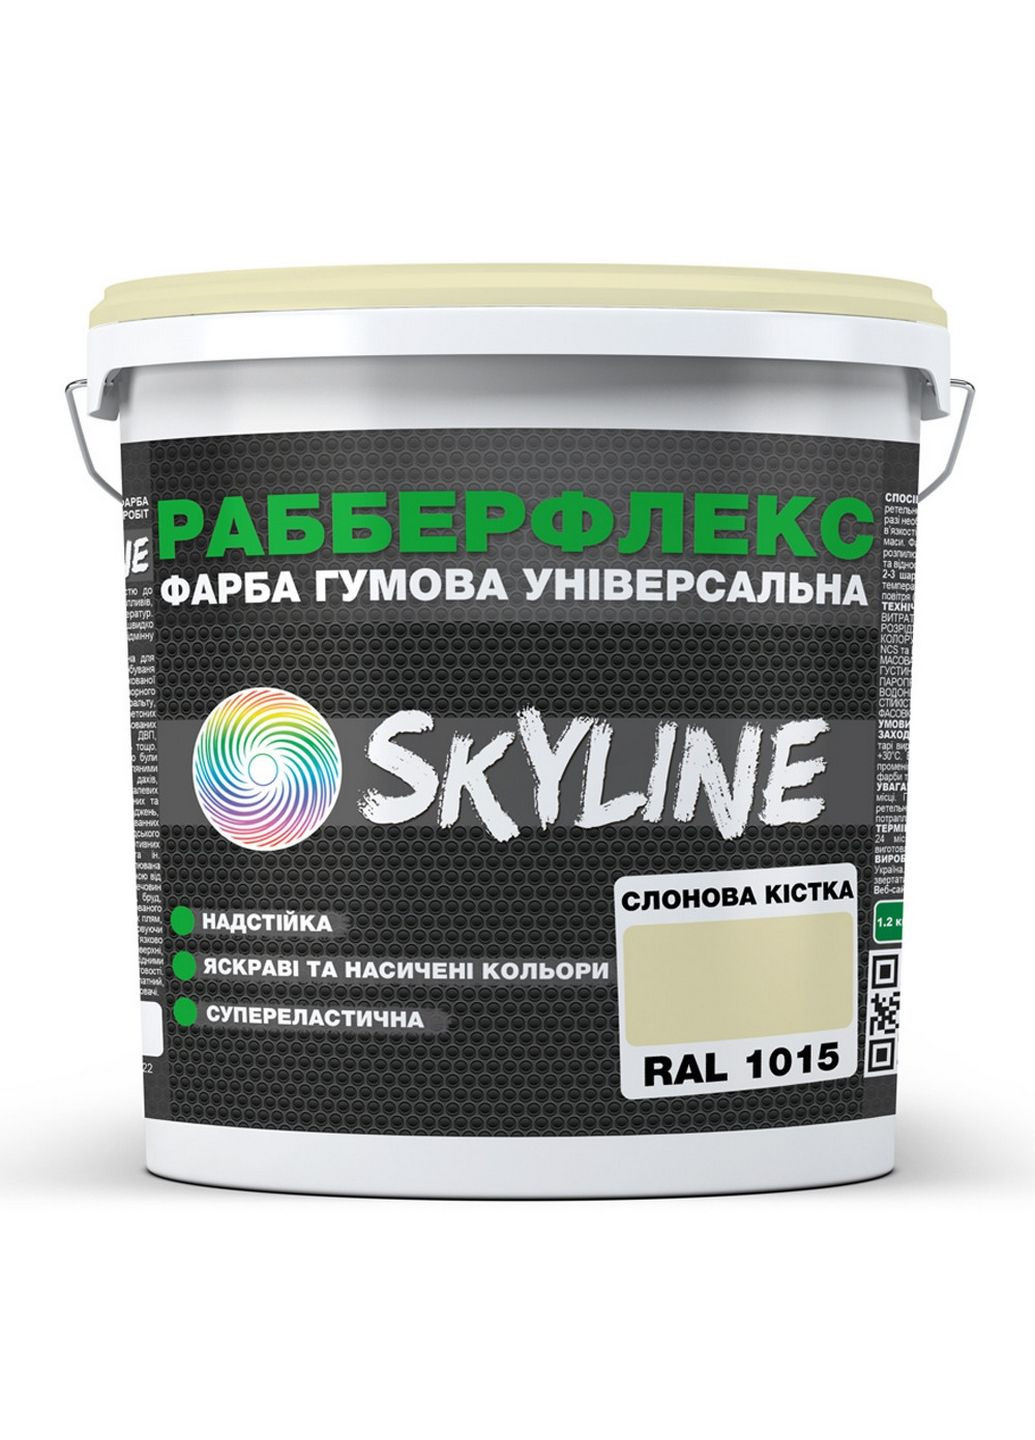 Надстійка фарба гумова супереластична «РабберФлекс» 3,6 кг SkyLine (283326166)